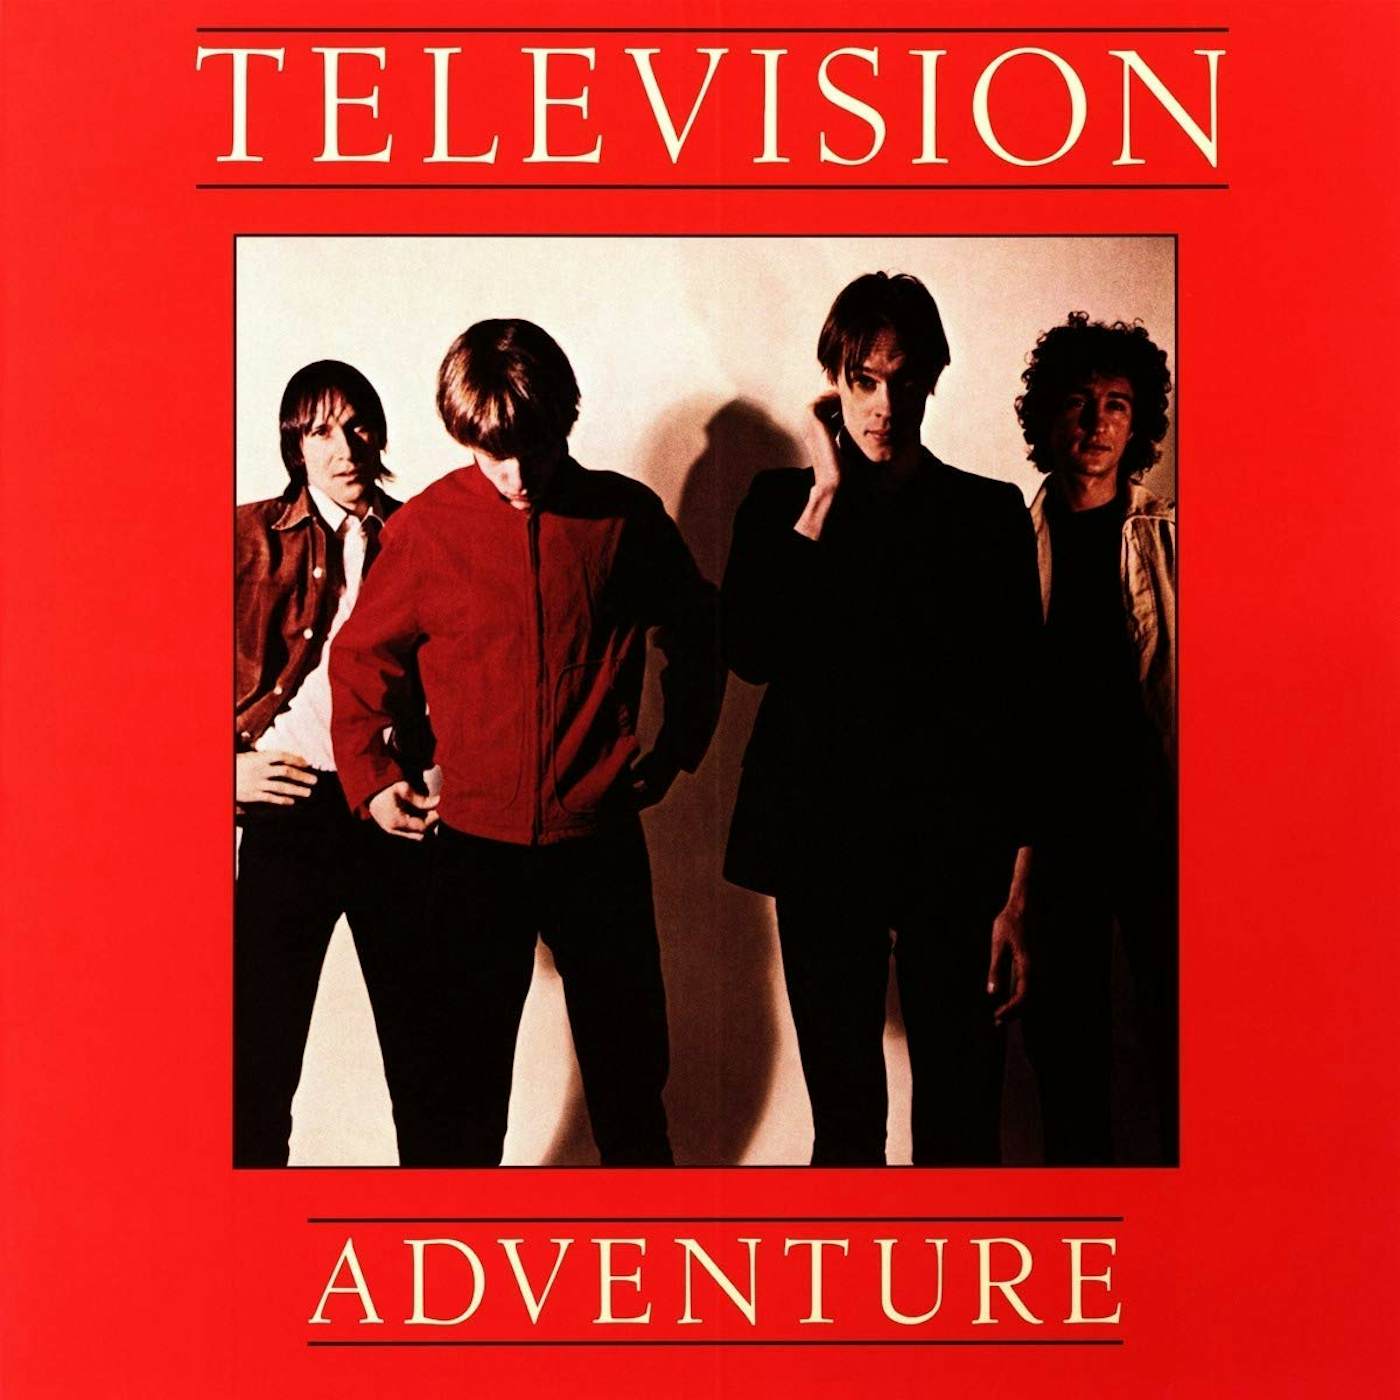 Television – Marquee Moon (1977, Santa Maria Pressing, Vinyl